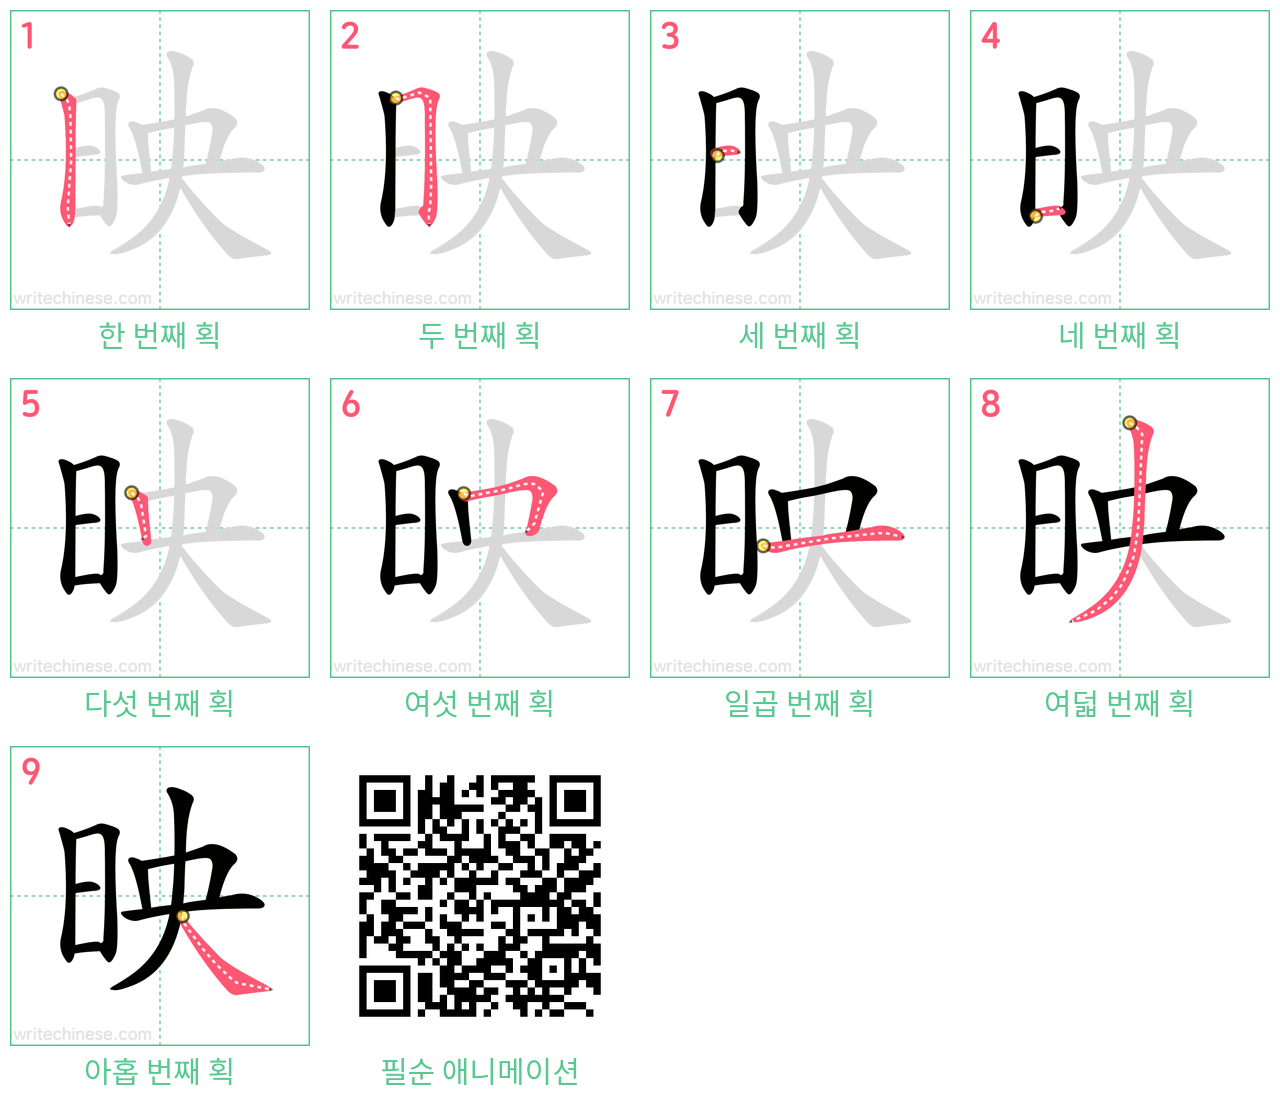 映 step-by-step stroke order diagrams